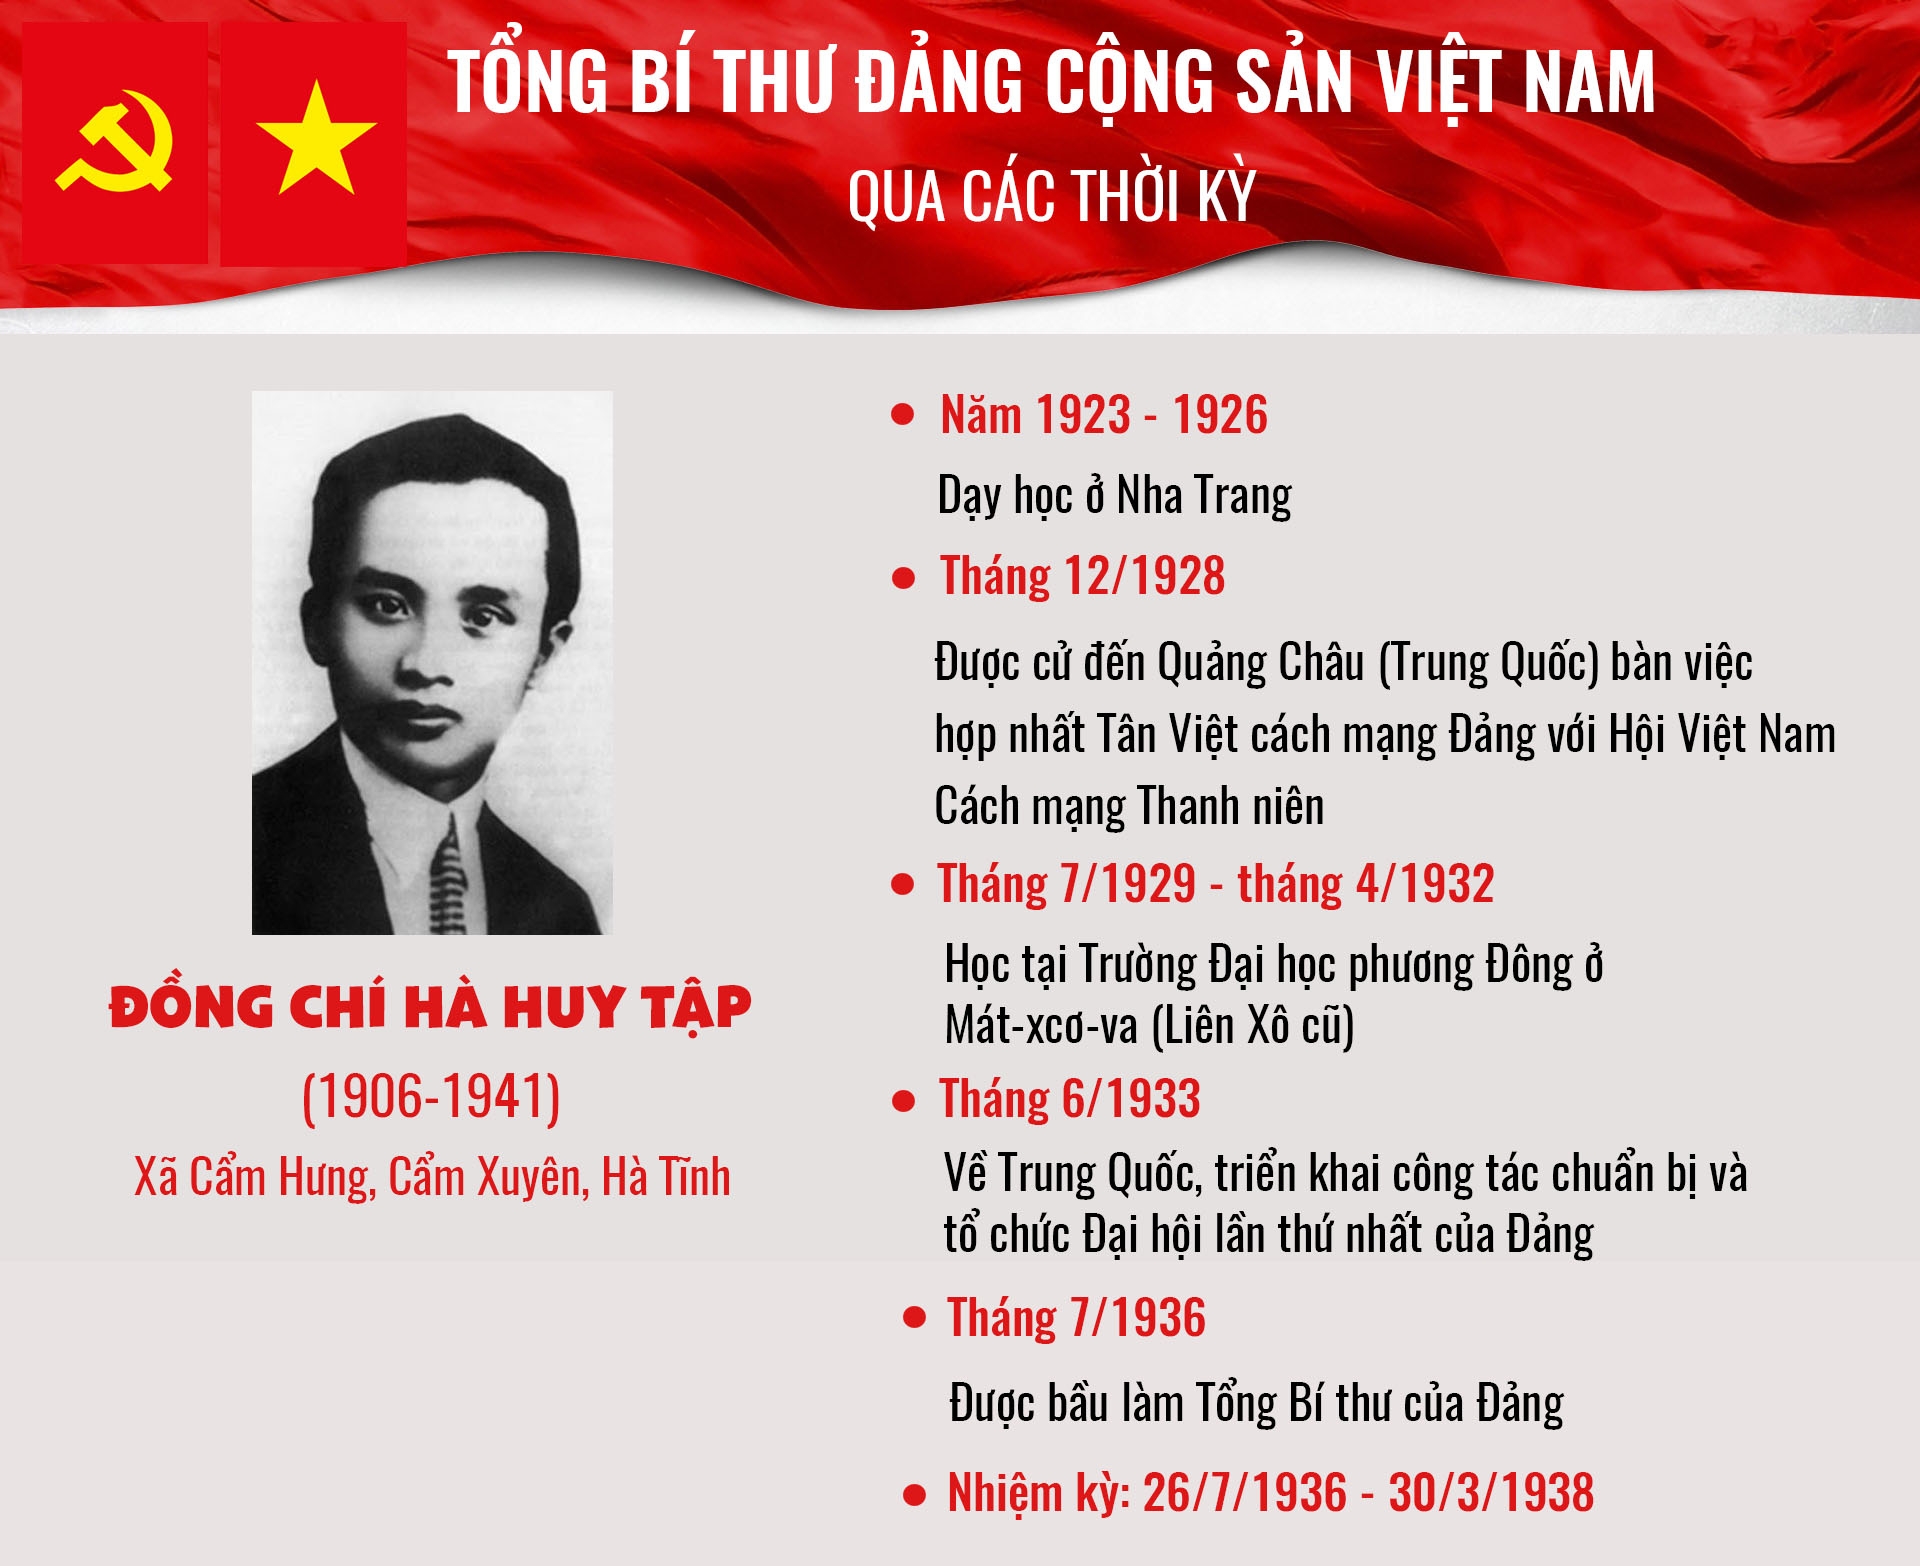 infographic tong bi thu dang cong san viet nam qua cac thoi ky